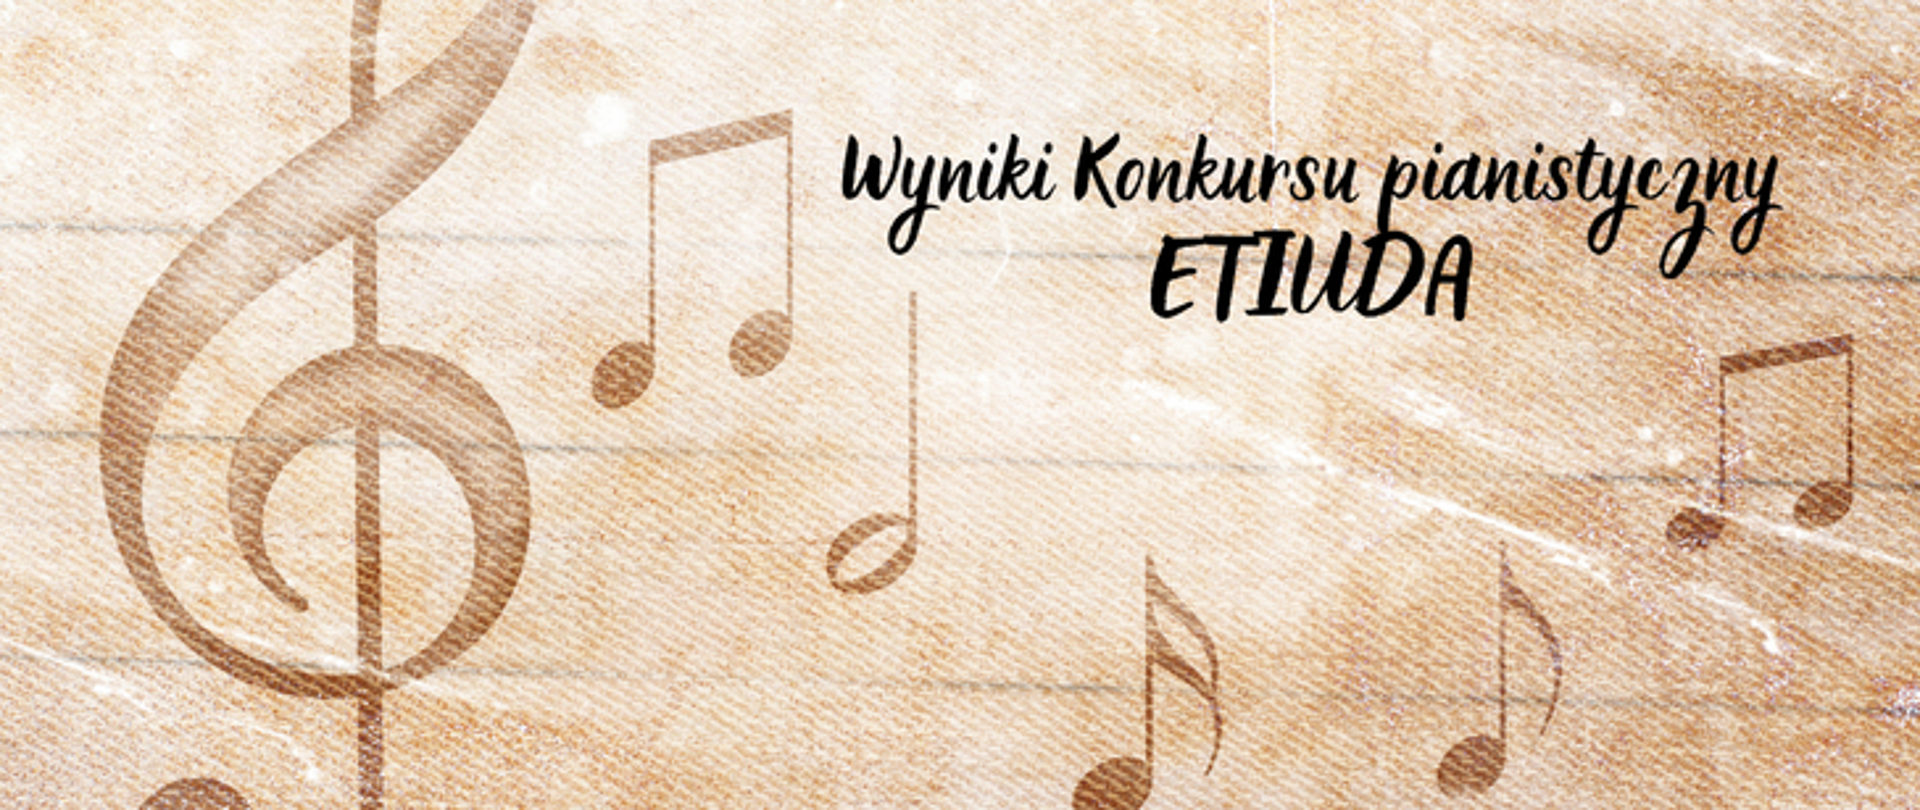 Plakat na bezowym tle o podłożu pięciolinii zawierający klucz wiolinowy oraz nuty. Na górze napis wyniki konkursu pianistycznego Etiuda.